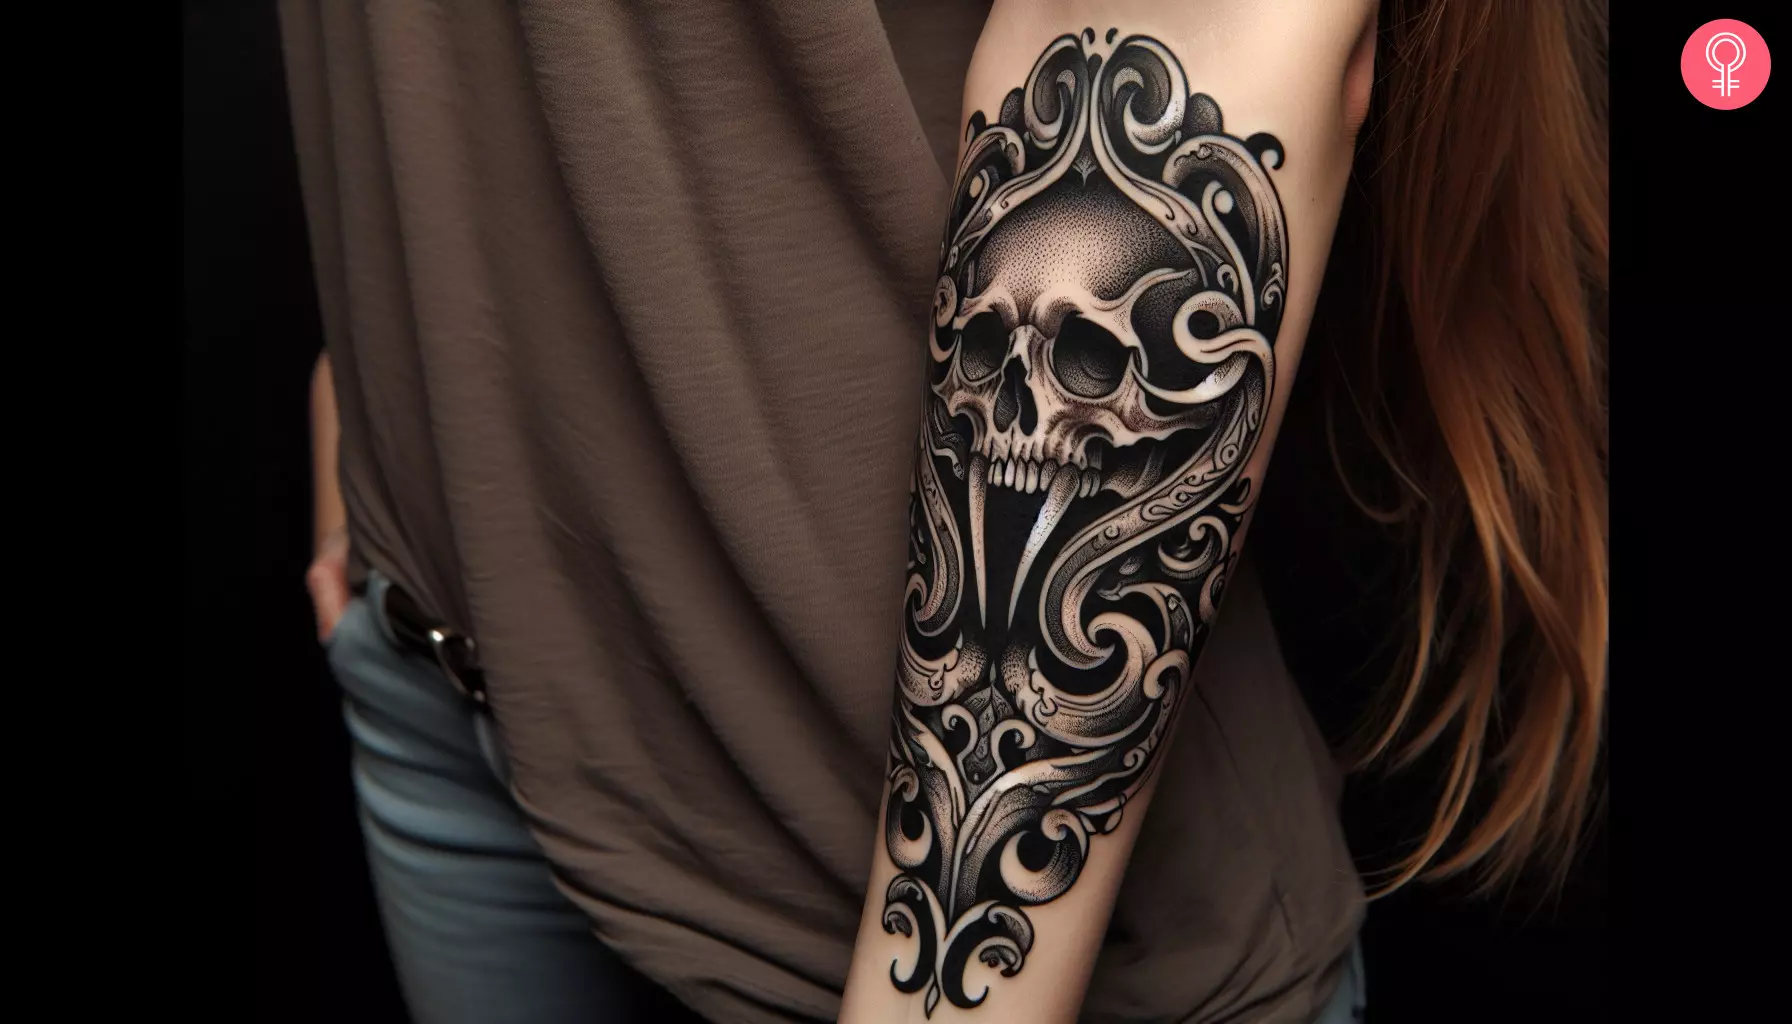 A vampire skull tattoo inked on the forearm